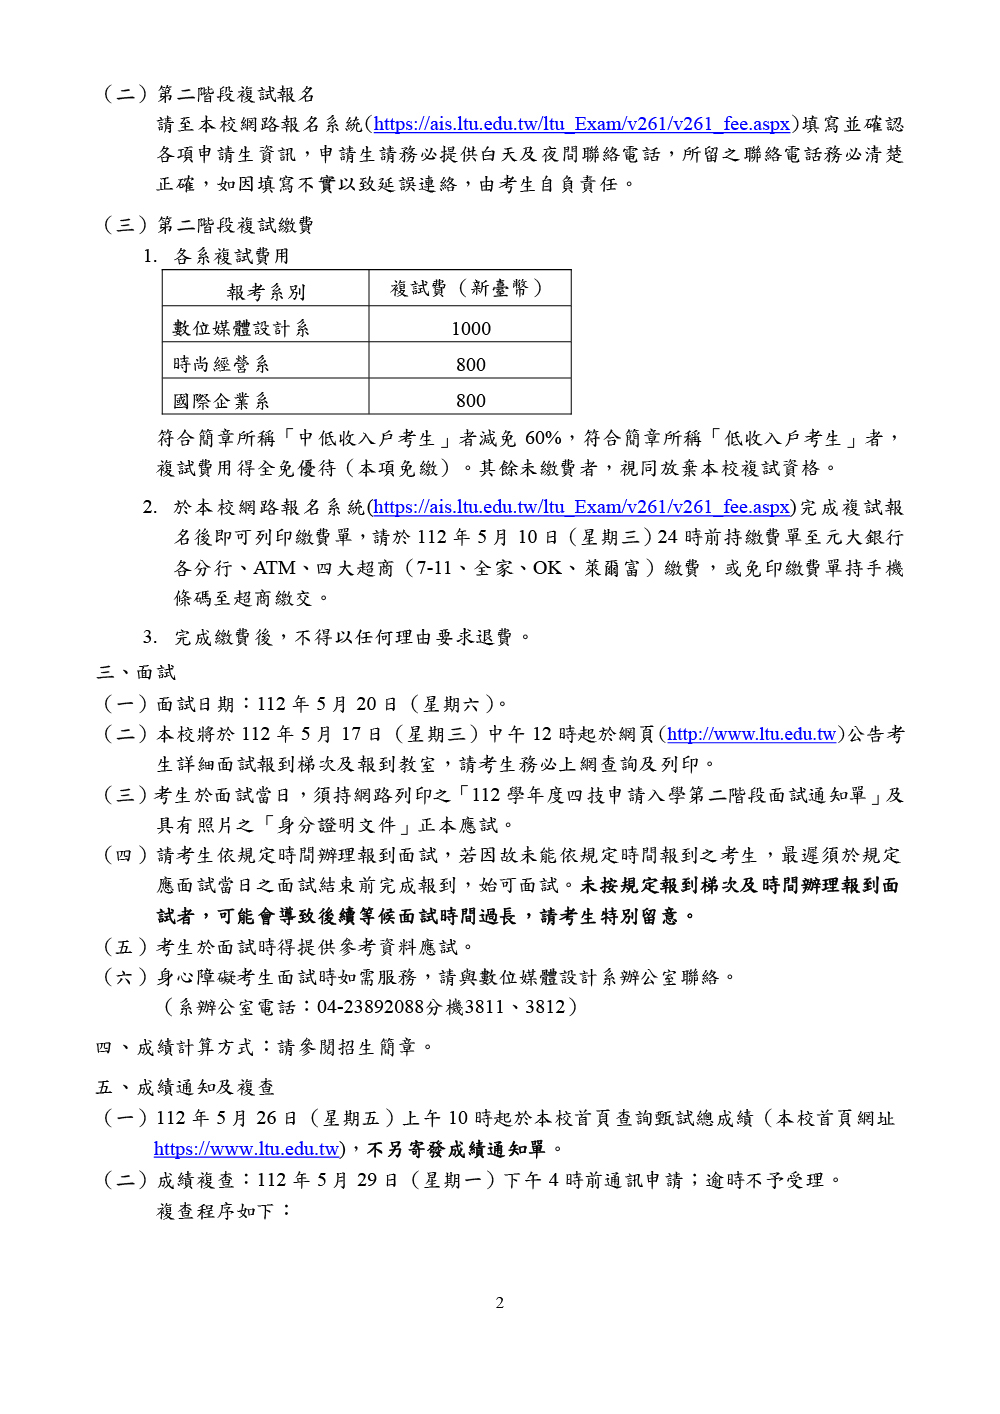 嶺東科技大學112學年度四技申請入學第二階段複試說明